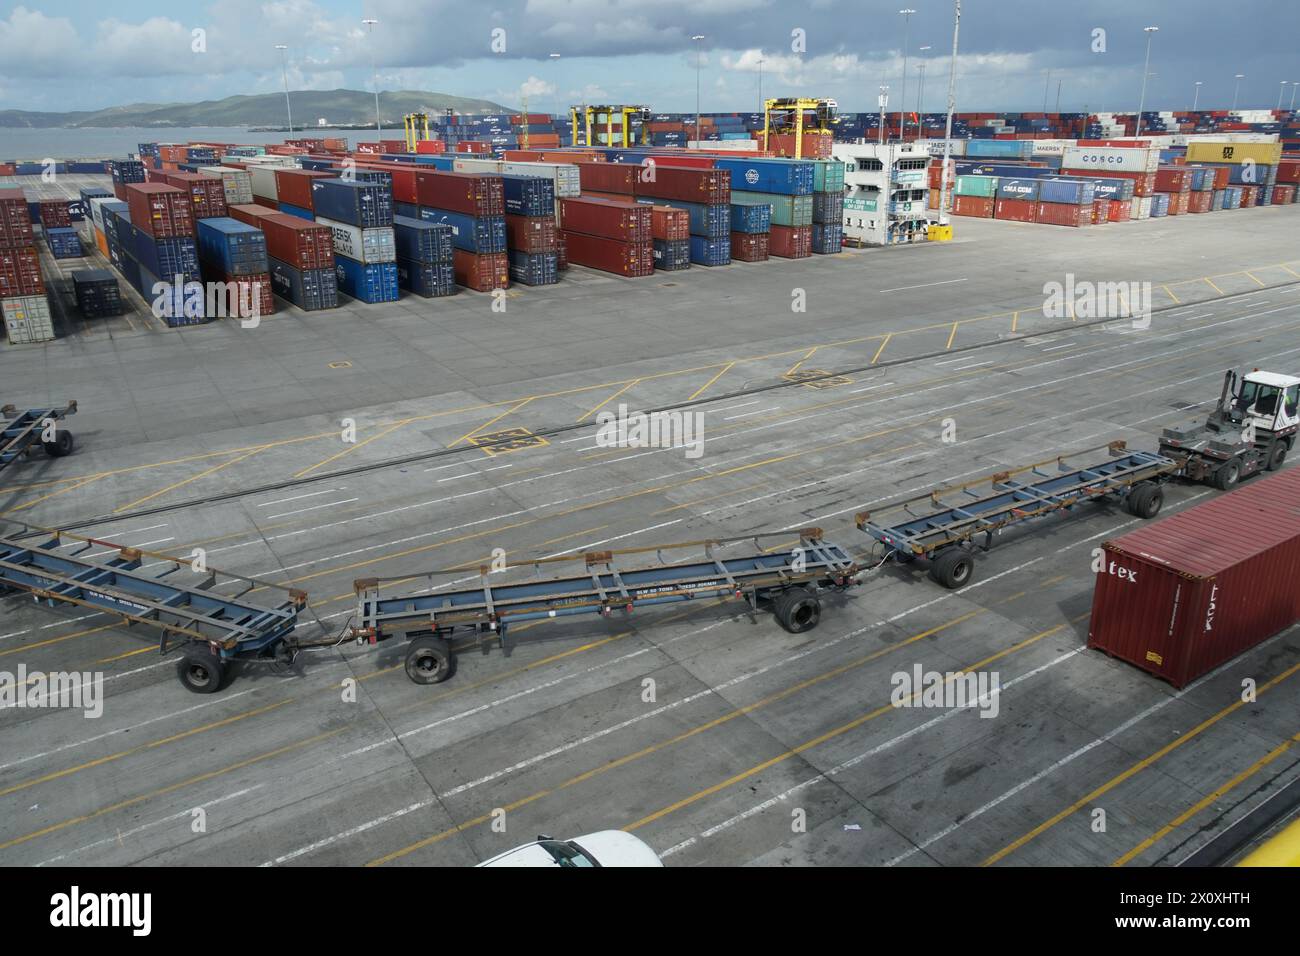 Wagon de marchandises avec véhicules remorqueurs ou voie de livraison ressemblant à un train passant devant des conteneurs arrimés dans le terminal portuaire de Kingston. Banque D'Images